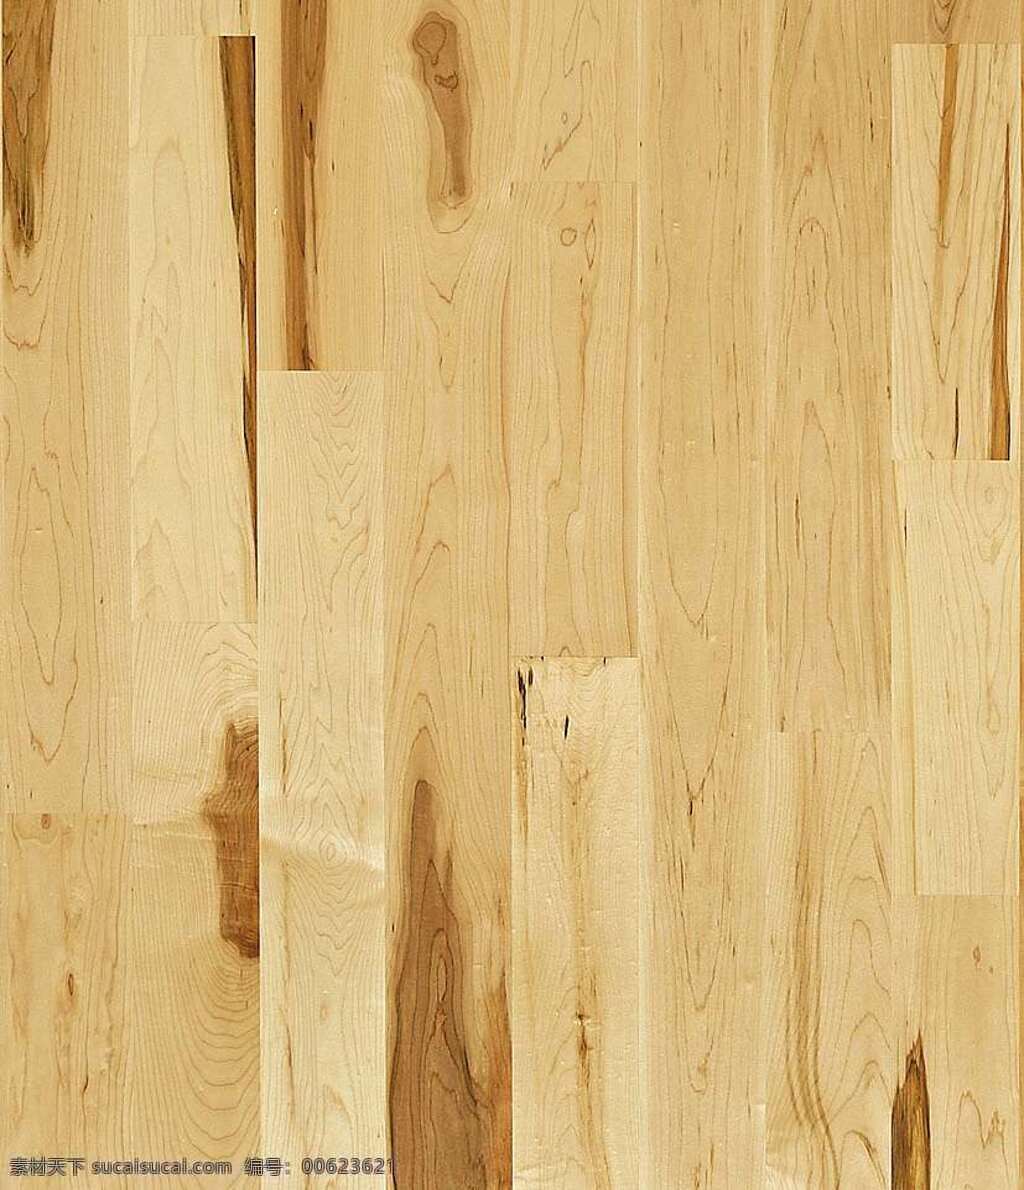 524 木地板 贴图 木材 地板贴图 木地板贴图 木地板效果图 装修效果图 木地板材质 装饰素材 室内装饰用图